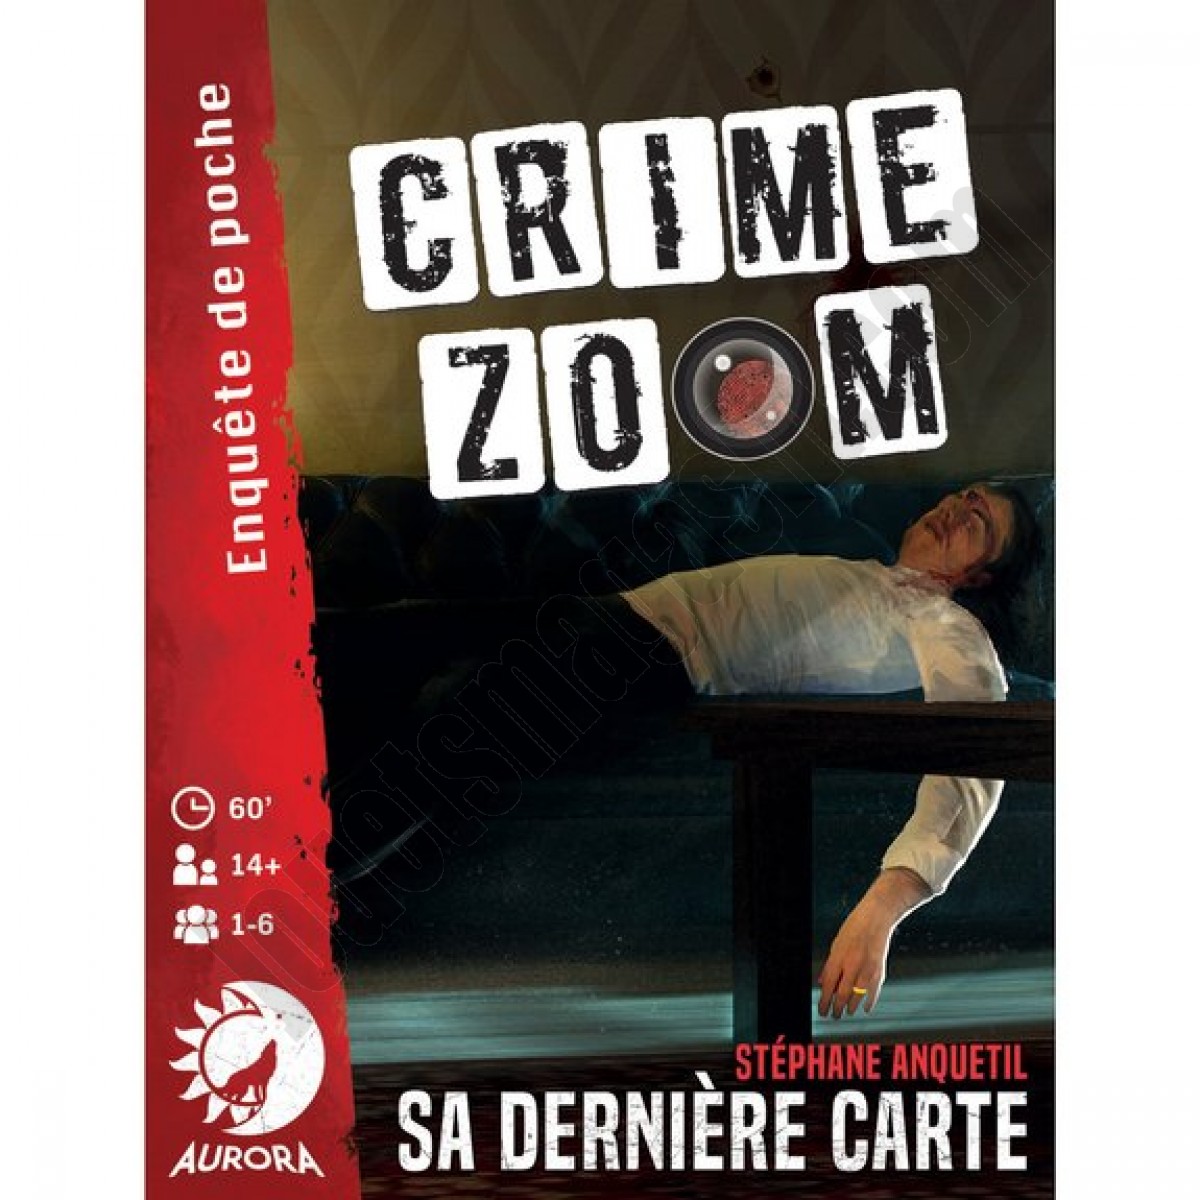 Crime Zoom Sa Dernière Carte ◆◆◆ Nouveau - Crime Zoom Sa Dernière Carte ◆◆◆ Nouveau